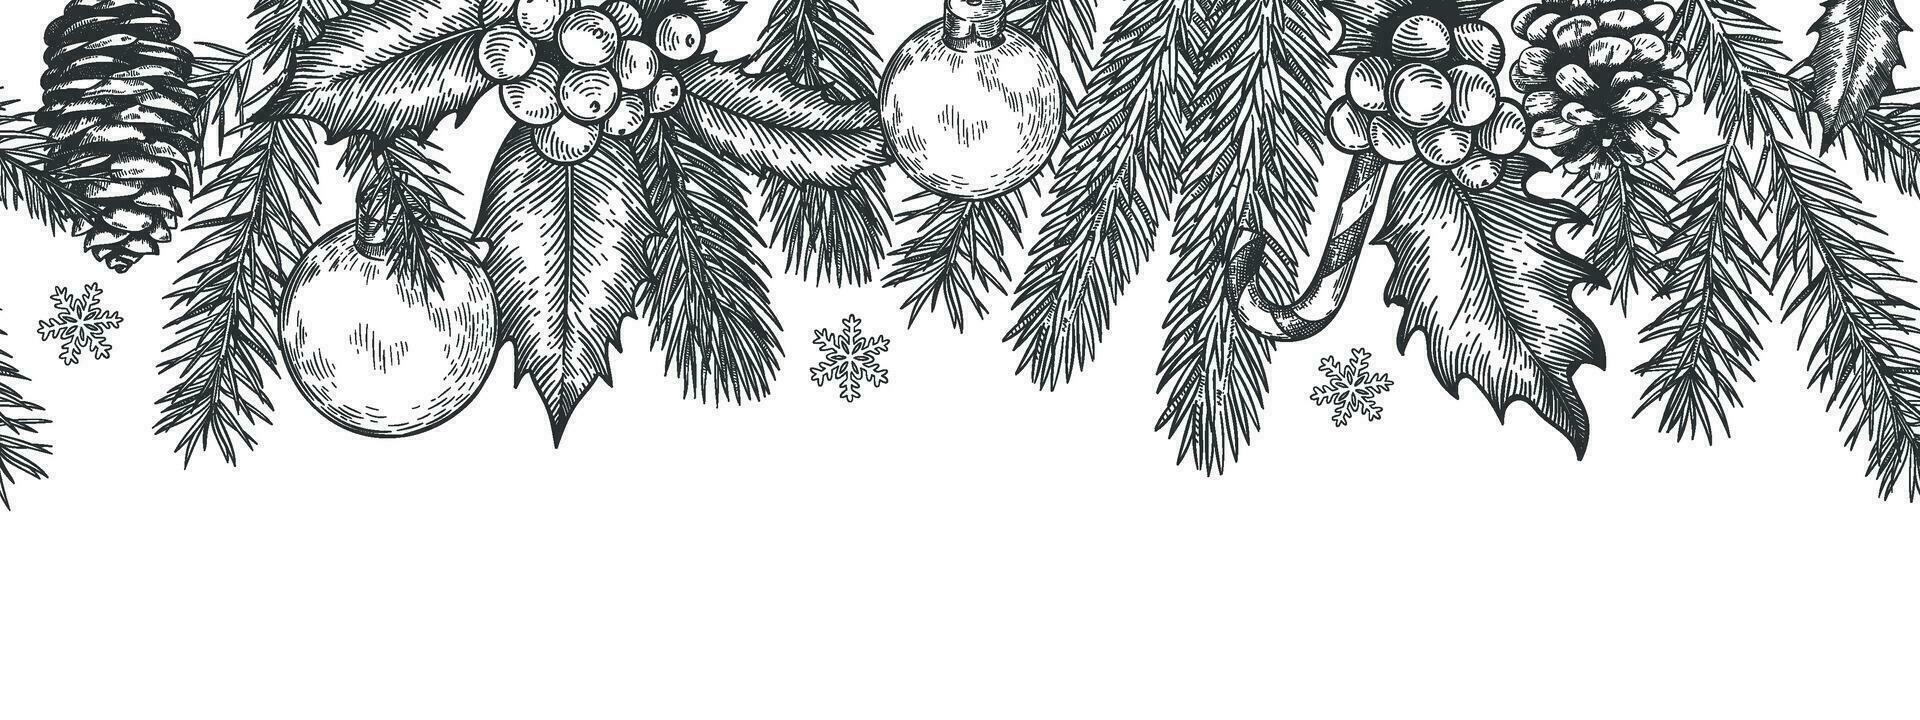 Noël sans couture vert frontière. horizontal bannière avec Noël arbre branches guirlande, houx baies et jouets, élément pour de fête vecteur carte